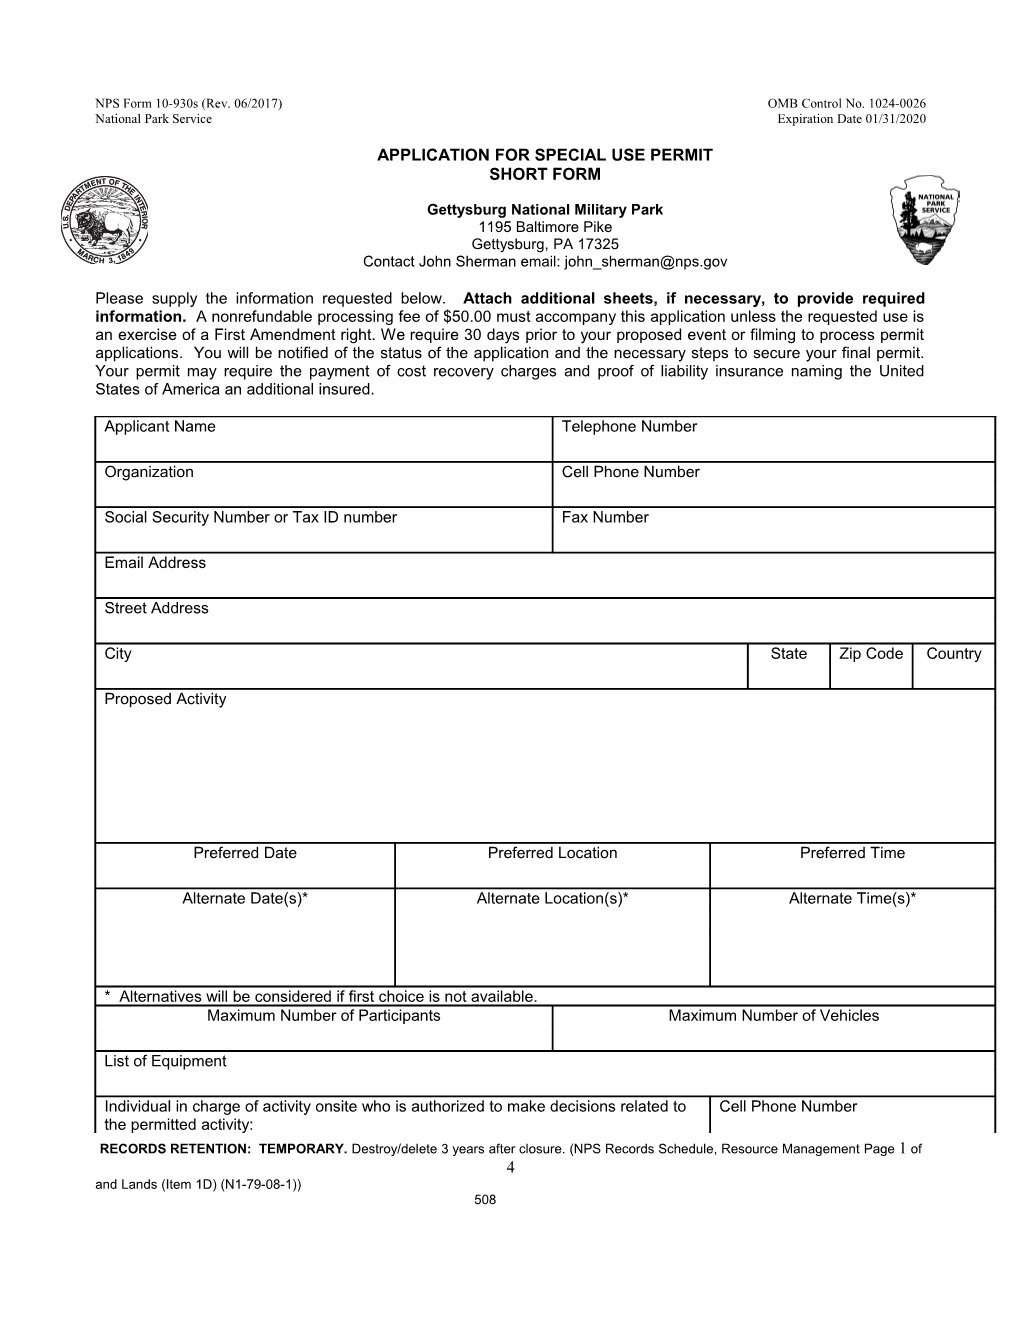 NPS Form 10-930S (Rev. 06/2017)OMB Control No. 1024-0026